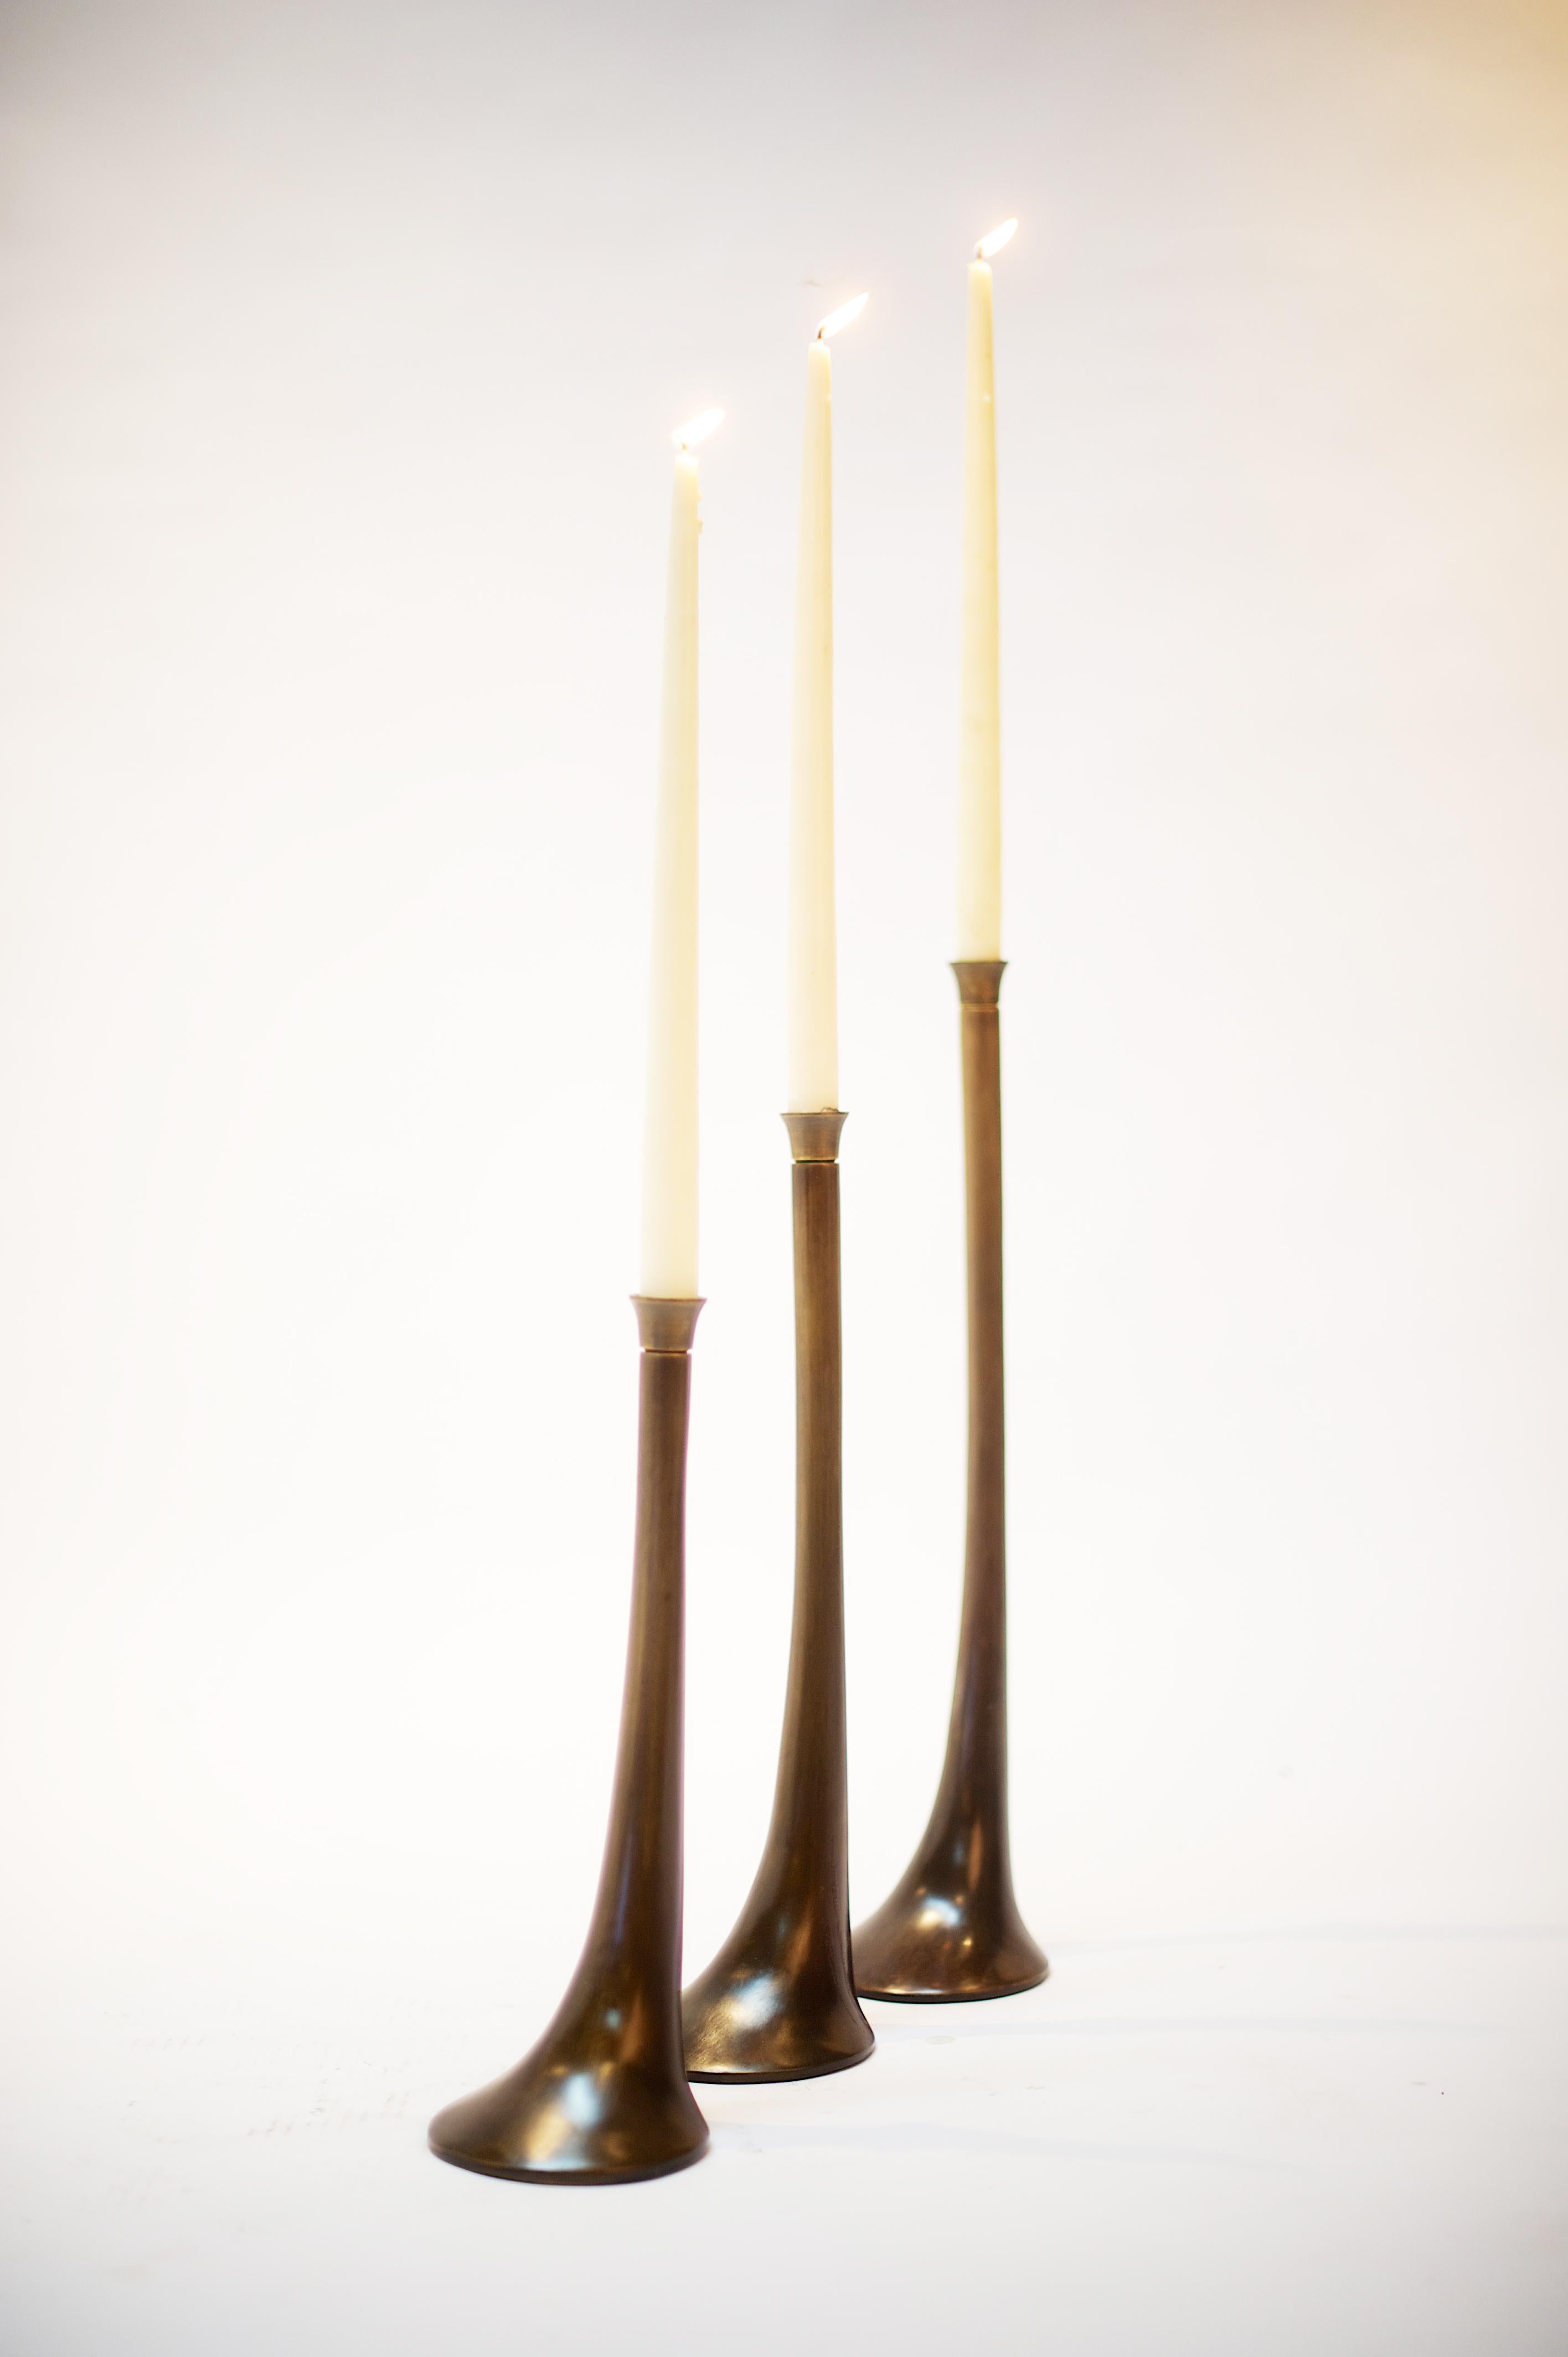 Set aus drei Ulmen-Kerzenhaltern von Elan Atelier. Erhältlich für Vorbestellungen, 12 Wochen Produktionszeit, plus internationaler Versand.

Das 3er-Set enthält 1 kleinen, 1 mittleren und 1 großen Kerzenständer aus Bronze.

Die Elm-Kerzenhalter